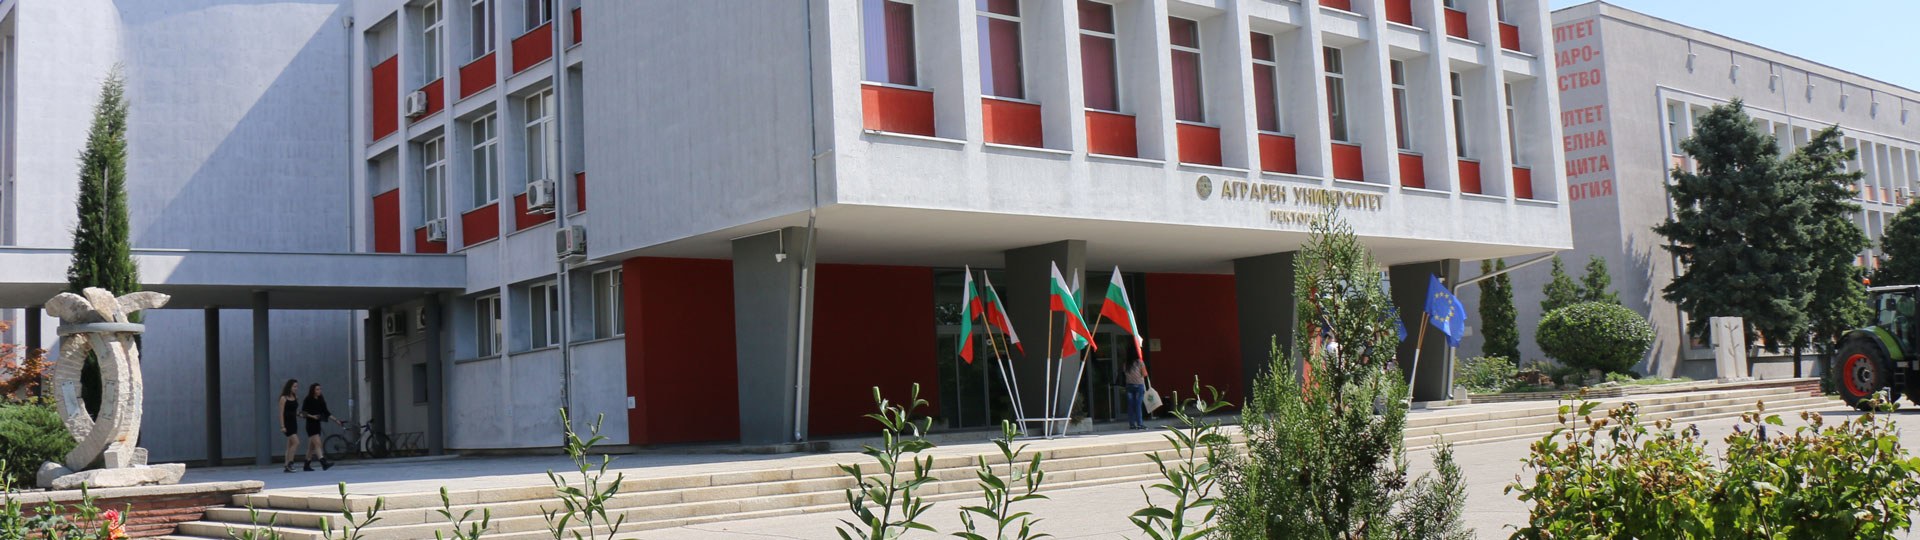 Аграрен университет – Пловдив е бенефициент по подмярка 1.1 „Професионално обучение и придобиване на умения“ 